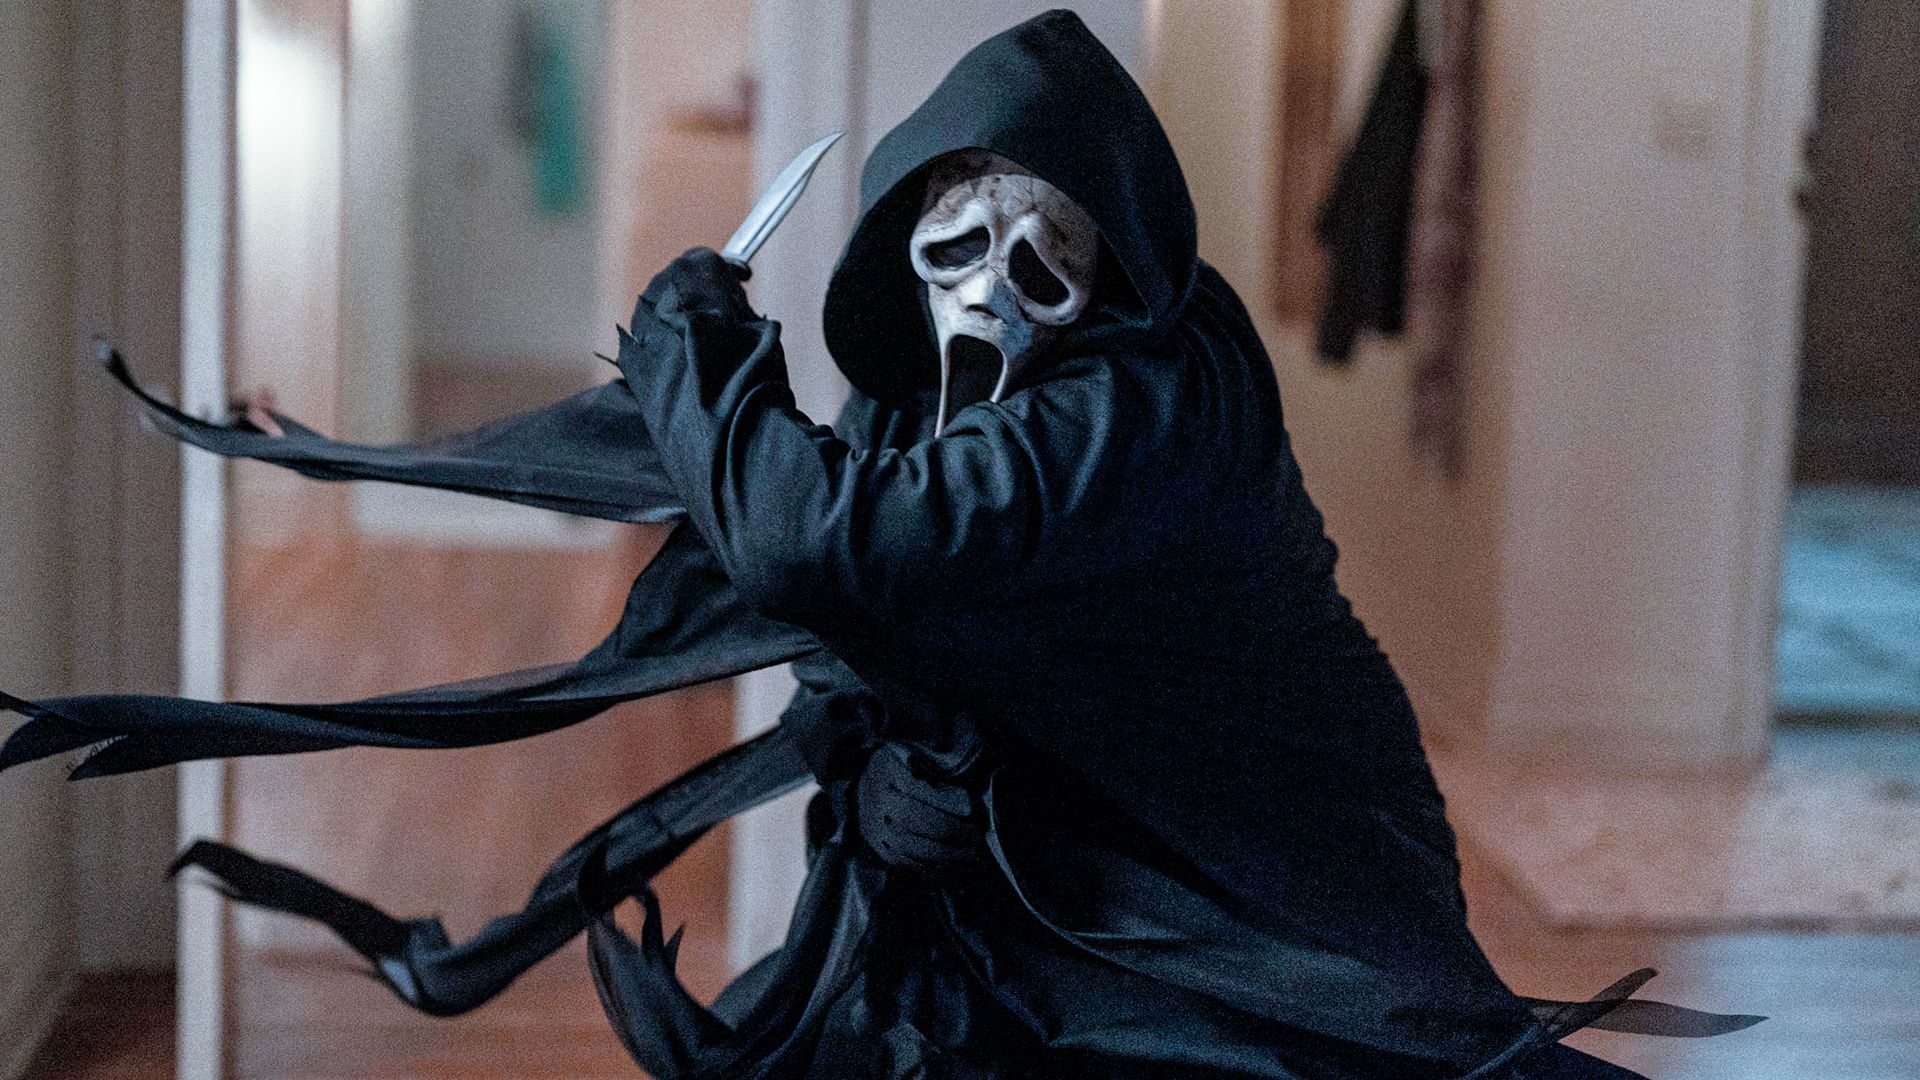 Scream 6': se confirma la vuelta de uno de los personajes que se creía  muerto